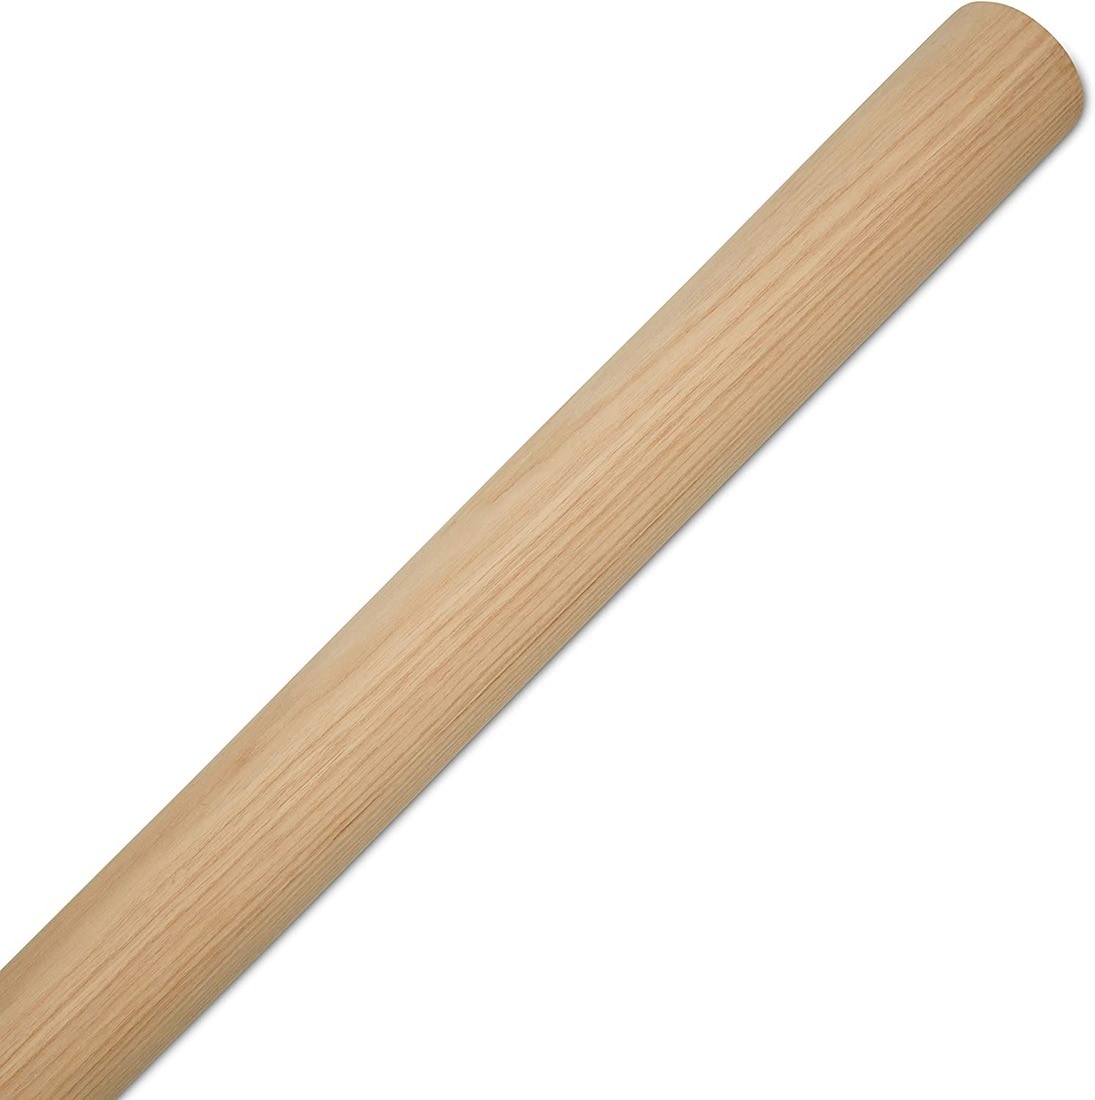 Wooden Sticks 5 1/2